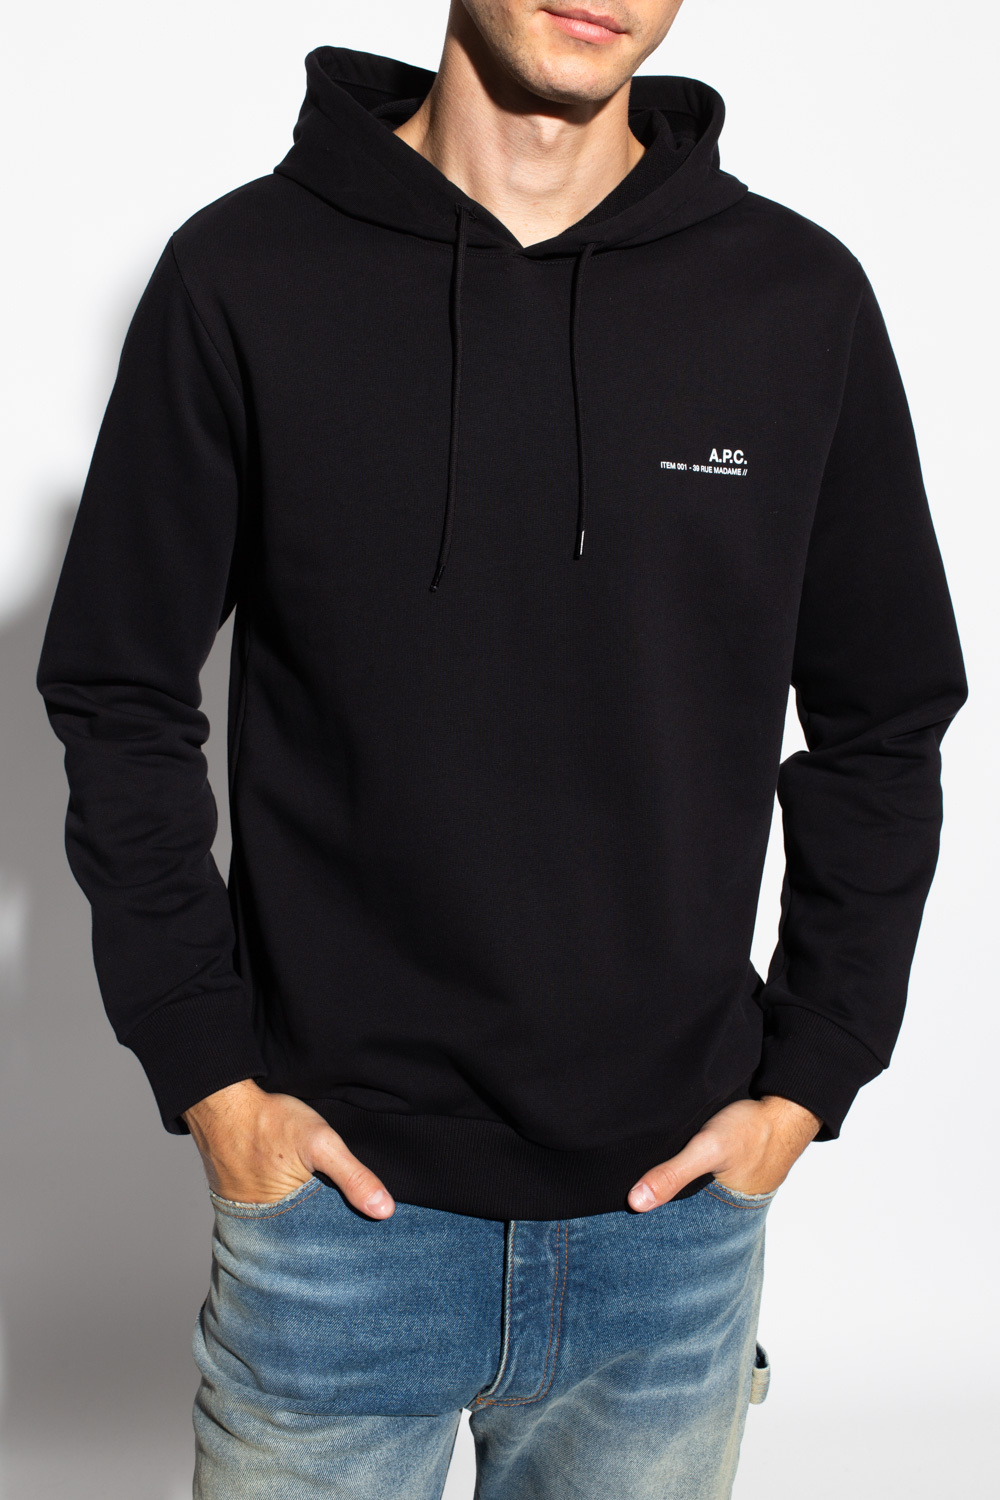 A.P.C. Logo-printed hoodie | Men's Clothing | Vitkac